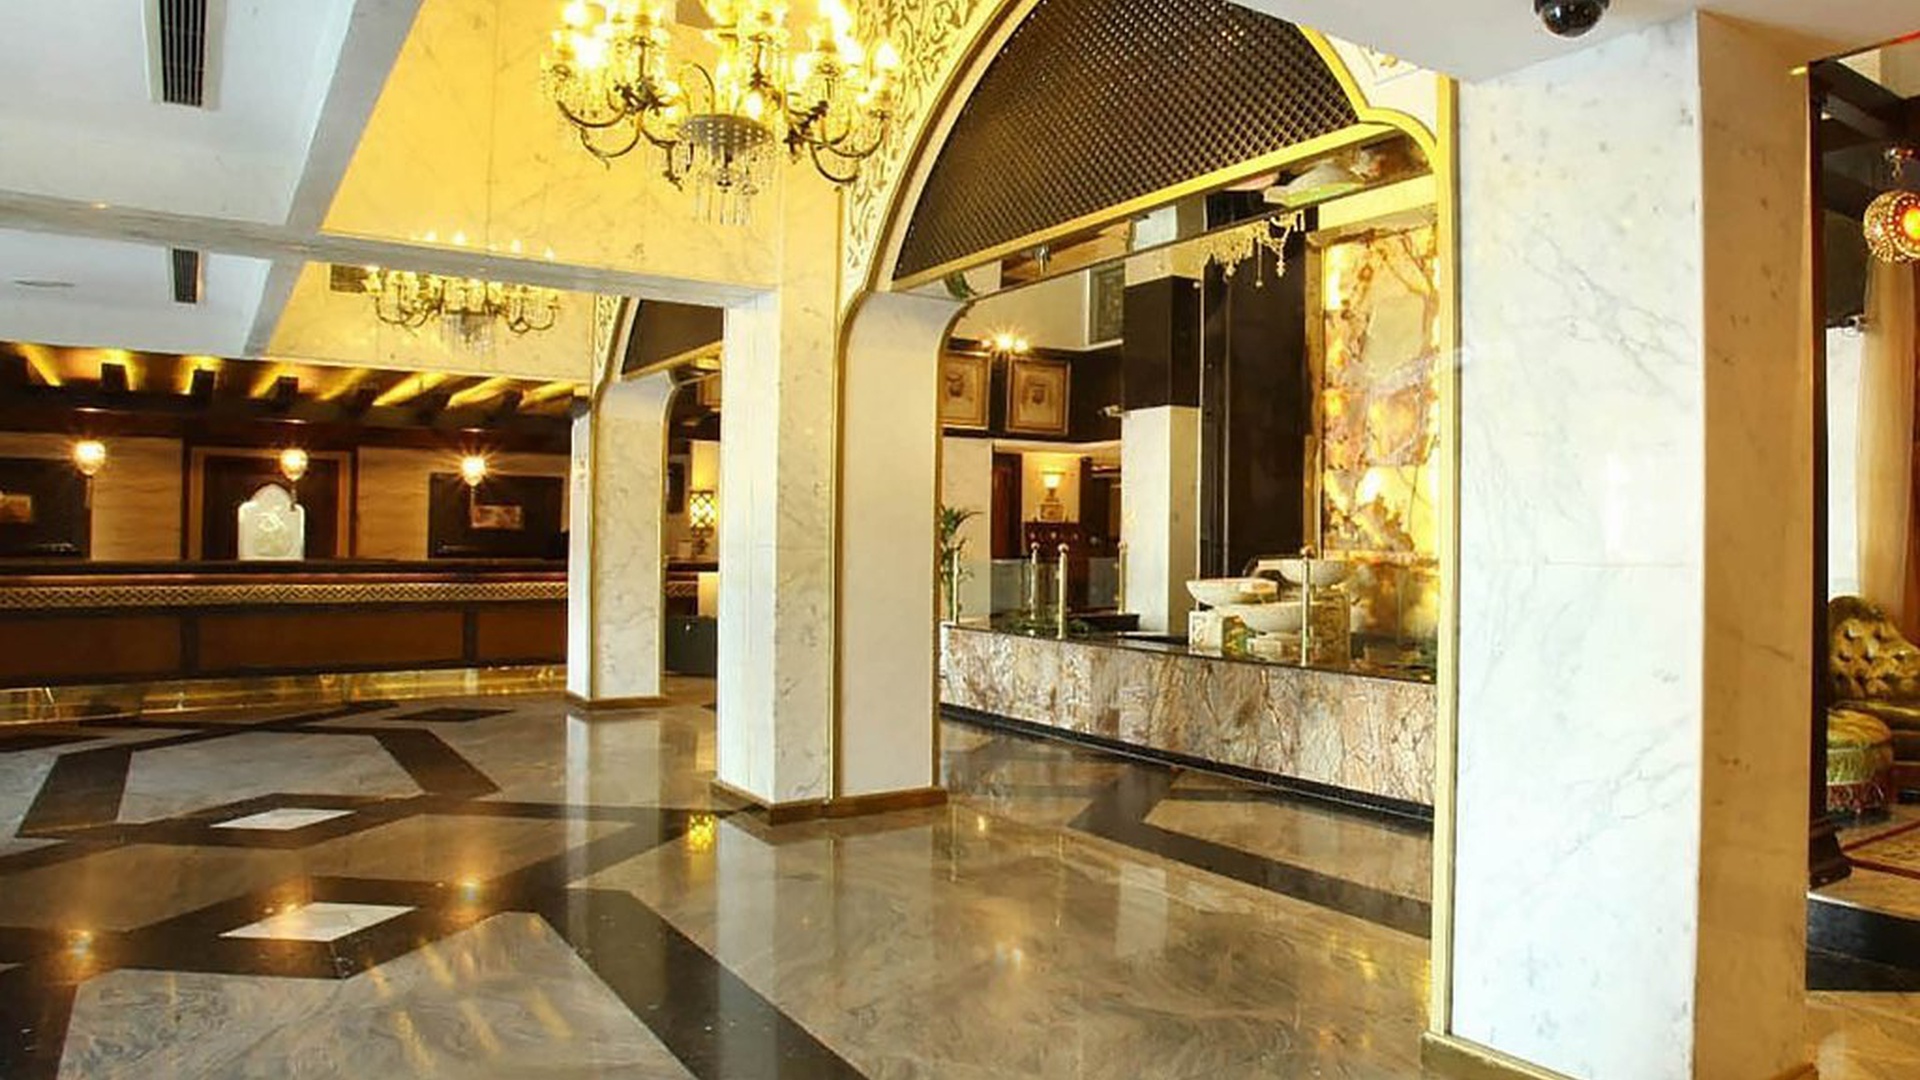  阿拉伯庭院水疗酒店 酒店和水療中心 迪拜酋长国